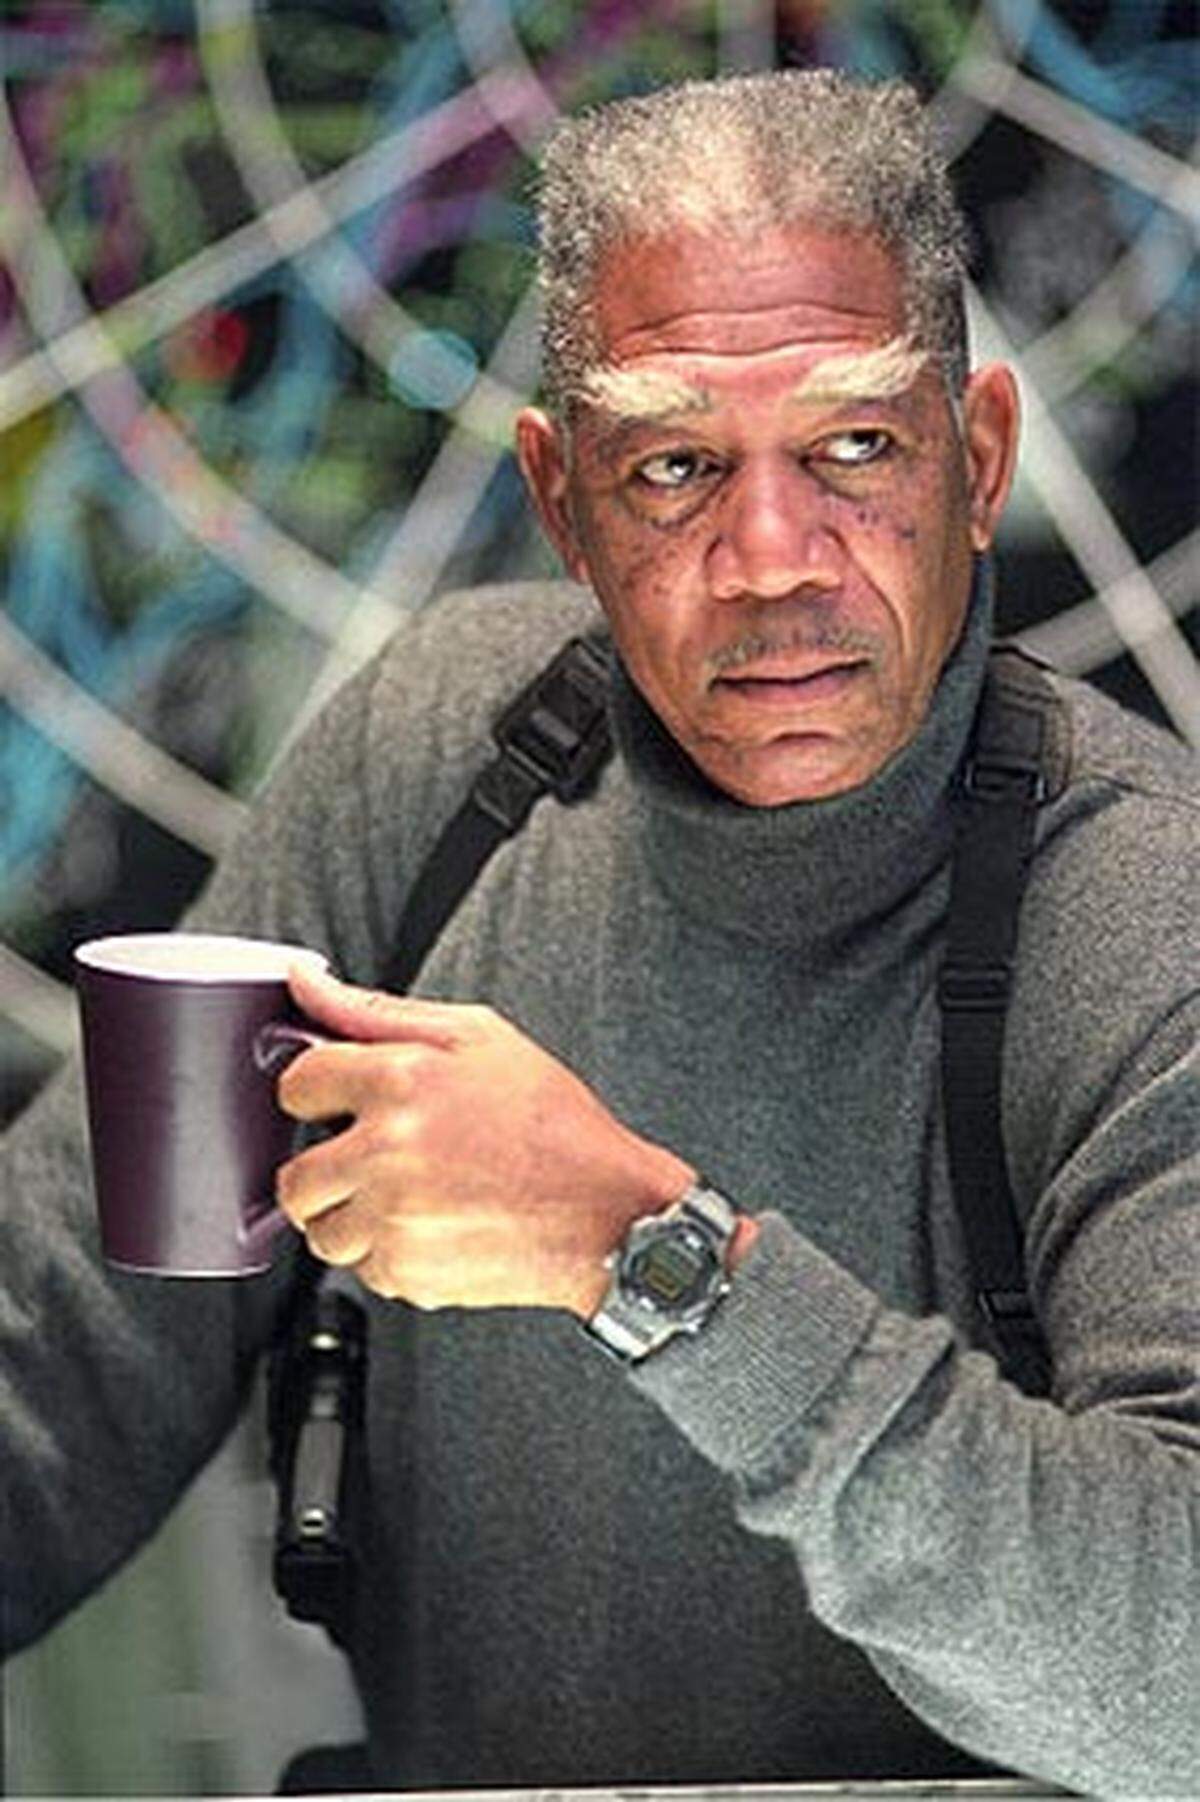 Oscarpreisträger Morgan Freeman spielte in der King-Verfilmung "Dreamcatcher" mit.